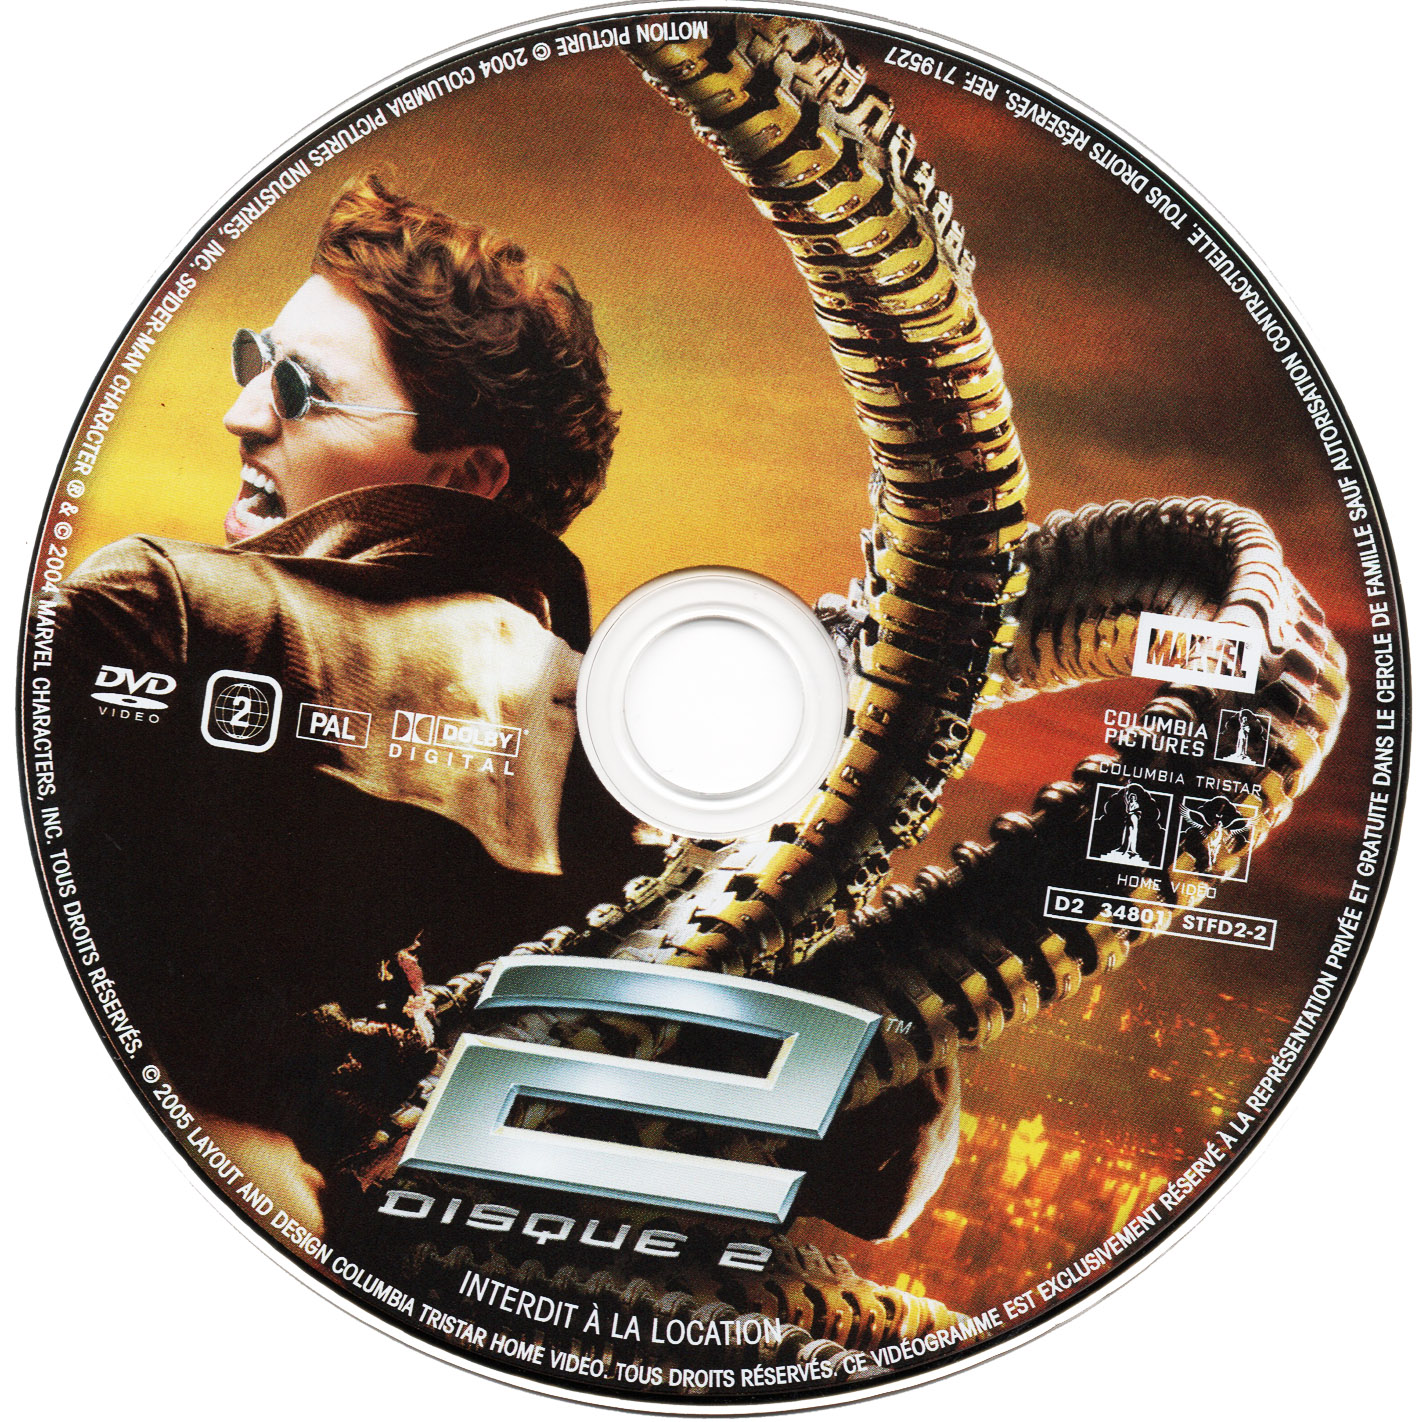 Spider-man 2 DISC 2